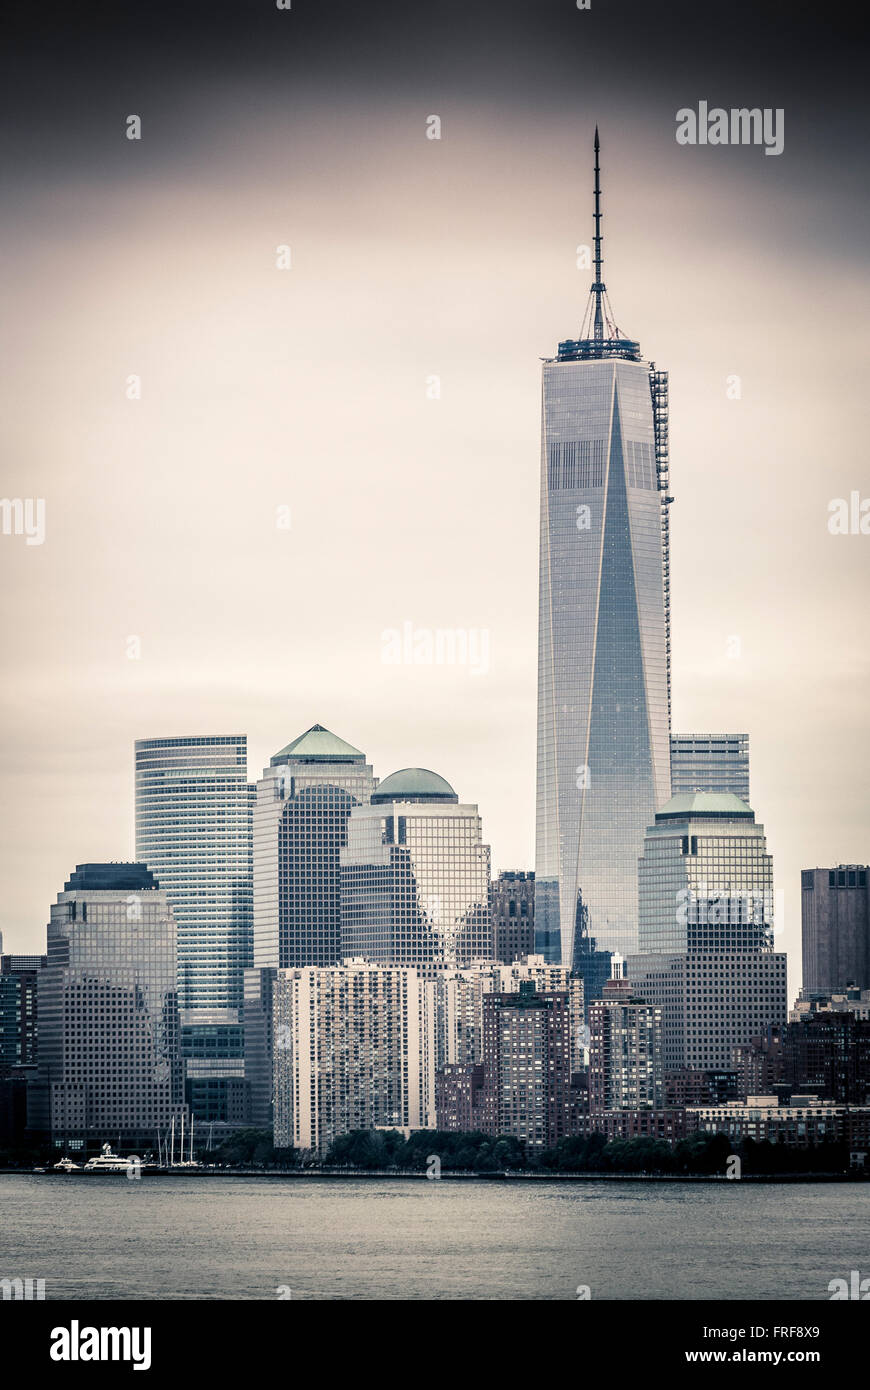 Lower Manhattan skyline vue à partir de la partie supérieure de la baie, le port de New York, USA. Banque D'Images